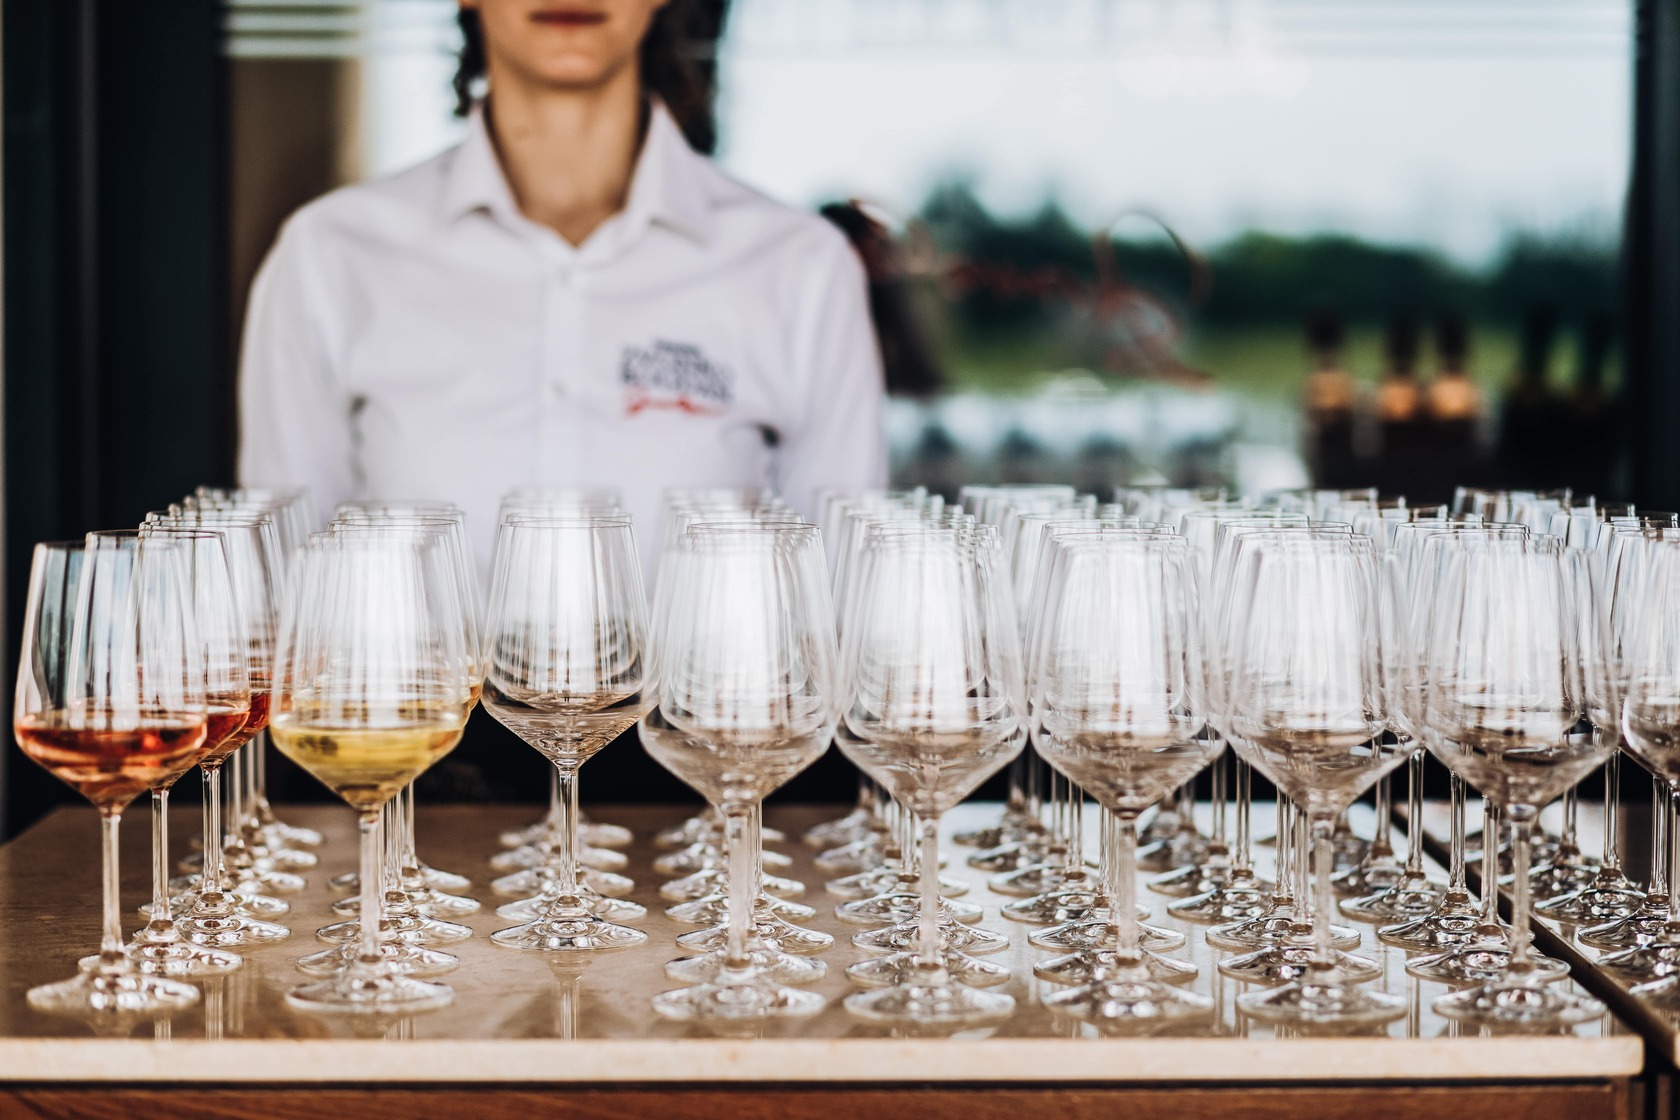 Une serveuse devant les verres de vin pour une prestation traiteur d'un événement professionnel avec l'agence Kap West Events.